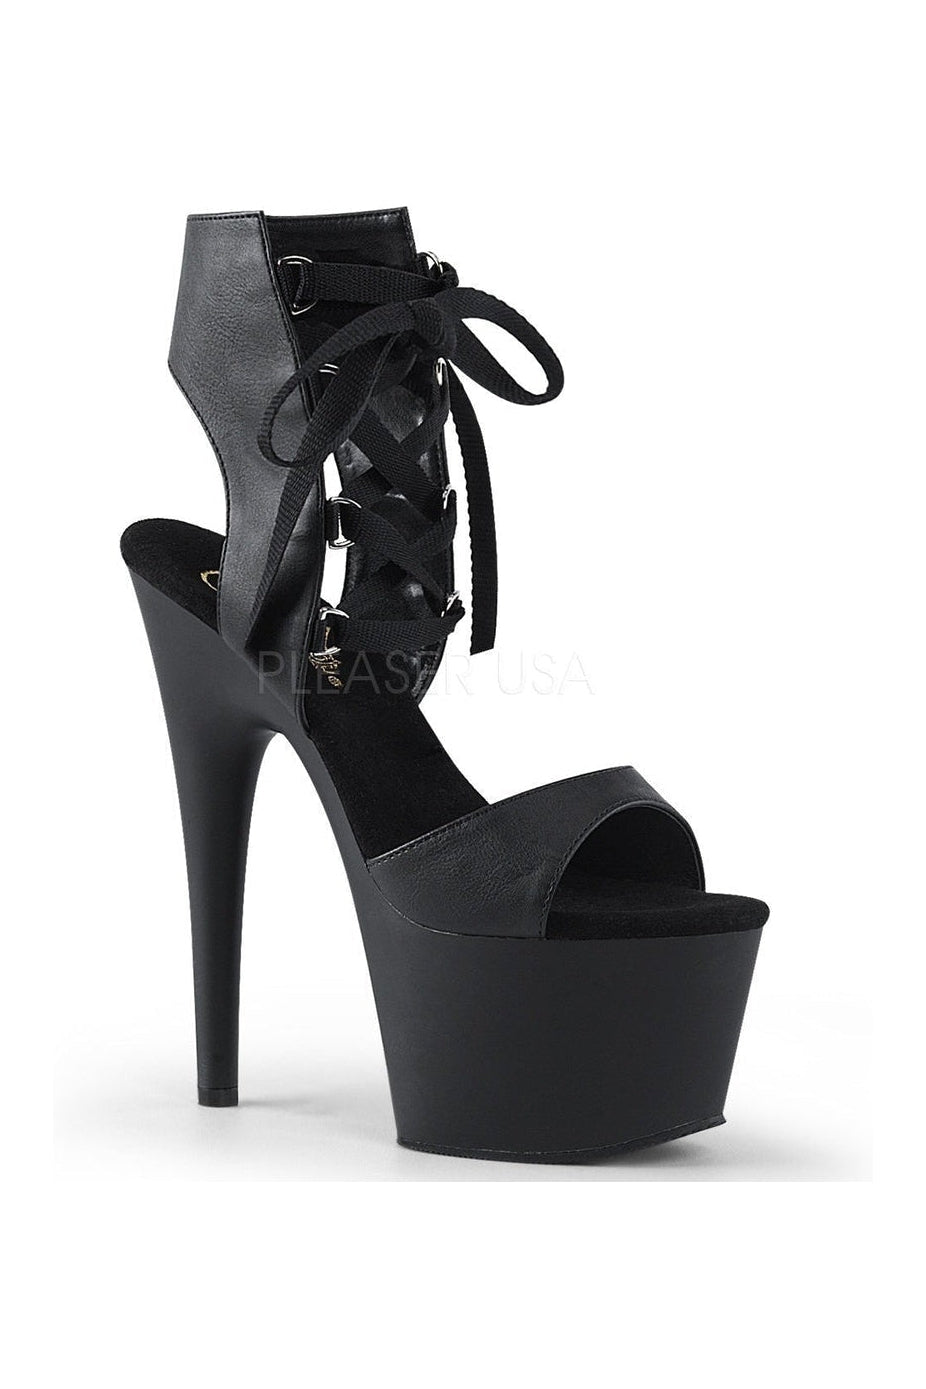 ADORE-700-14 Platform Sandal | Black Faux Leather-Pleaser-Black-Sandals-SEXYSHOES.COM